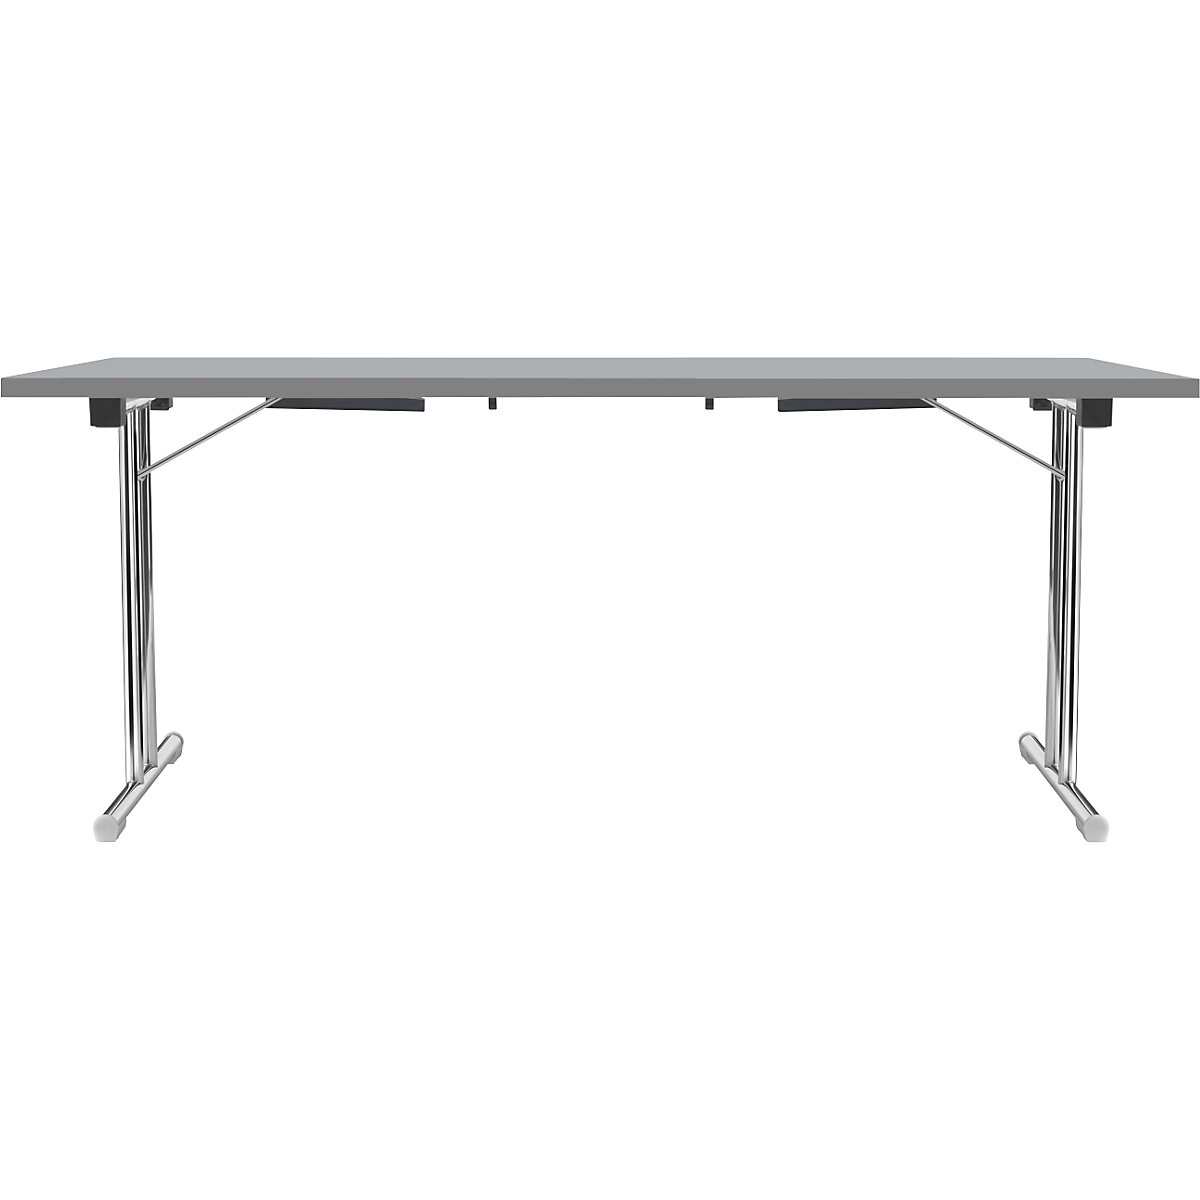 Tavolo pieghevole con basamento a T doppio, telaio in tubo tondo d'acciaio, cromato, grigio chiaro/antracite, largh. x prof. 1800 x 800 mm-12